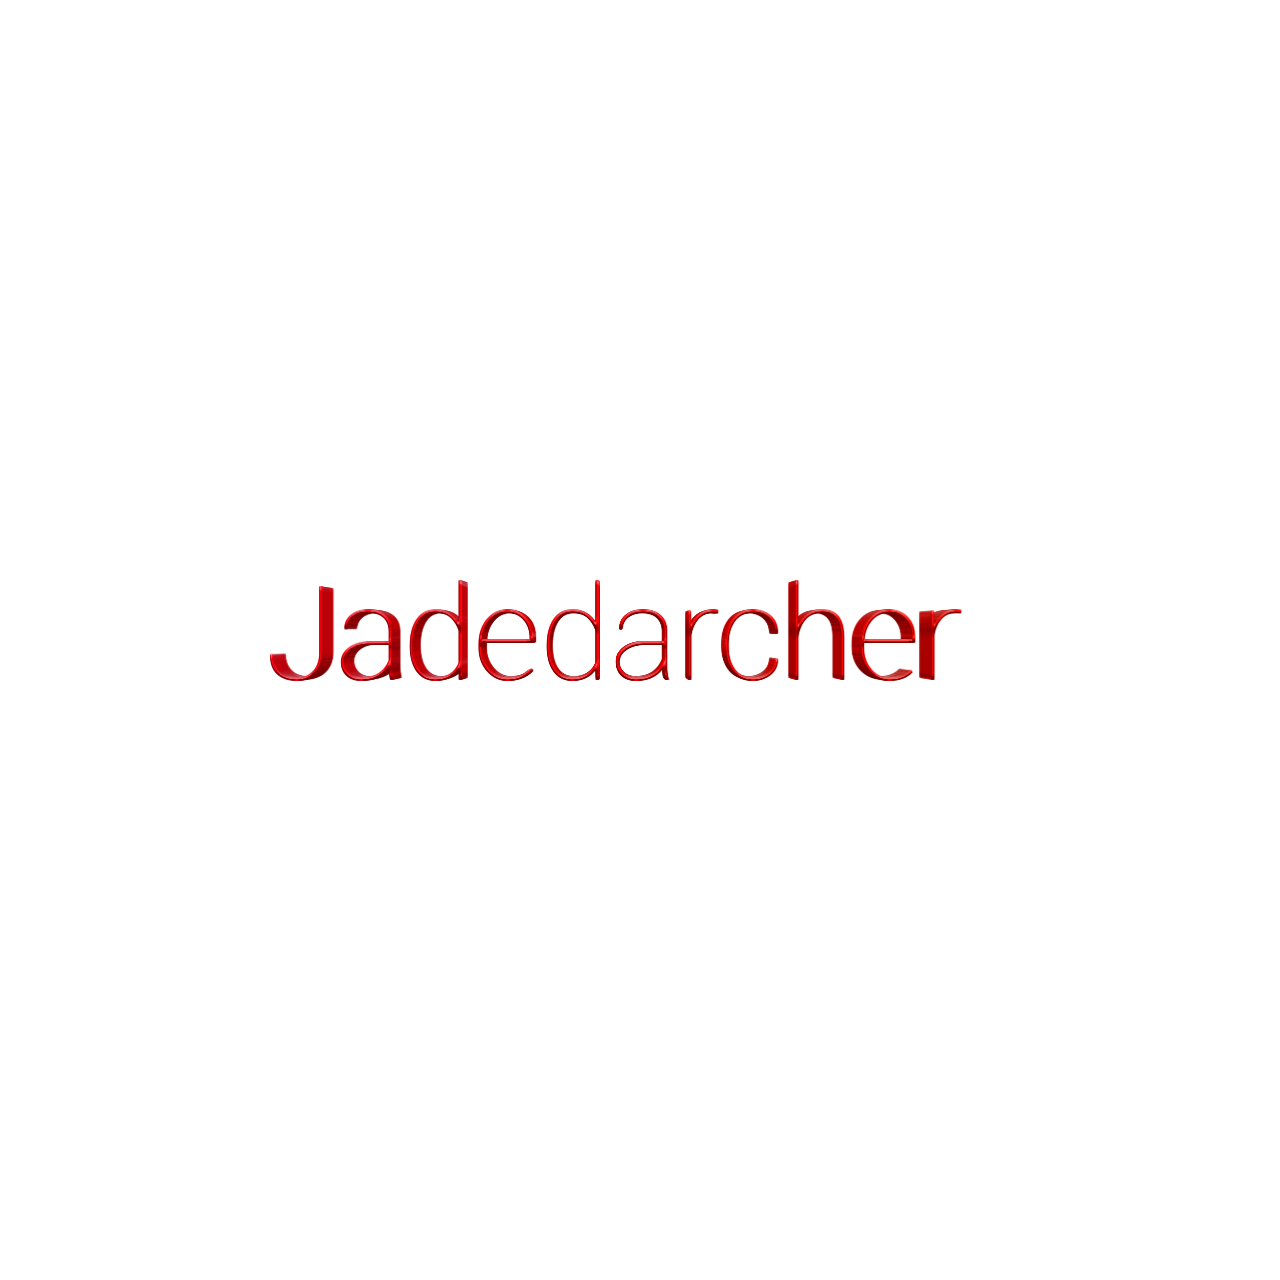 Banner for Jadedarcher Minecraft server